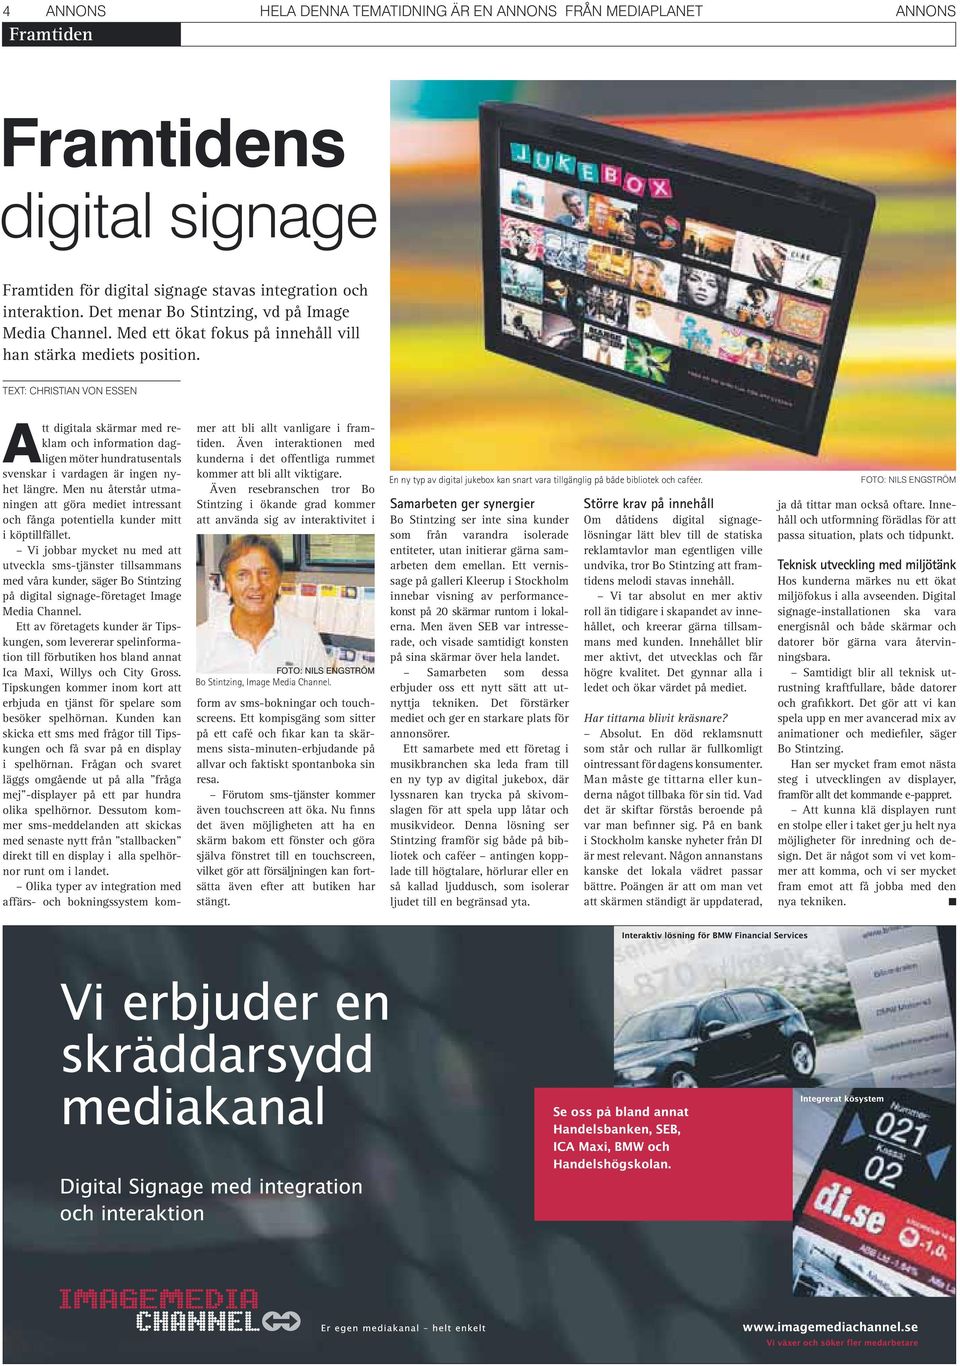 TEXT: CHRISTIAN VON ESSEN Att digitala skärmar med reklam och information dagligen möter hundra tusentals svenskar i vardagen är ingen nyhet längre.